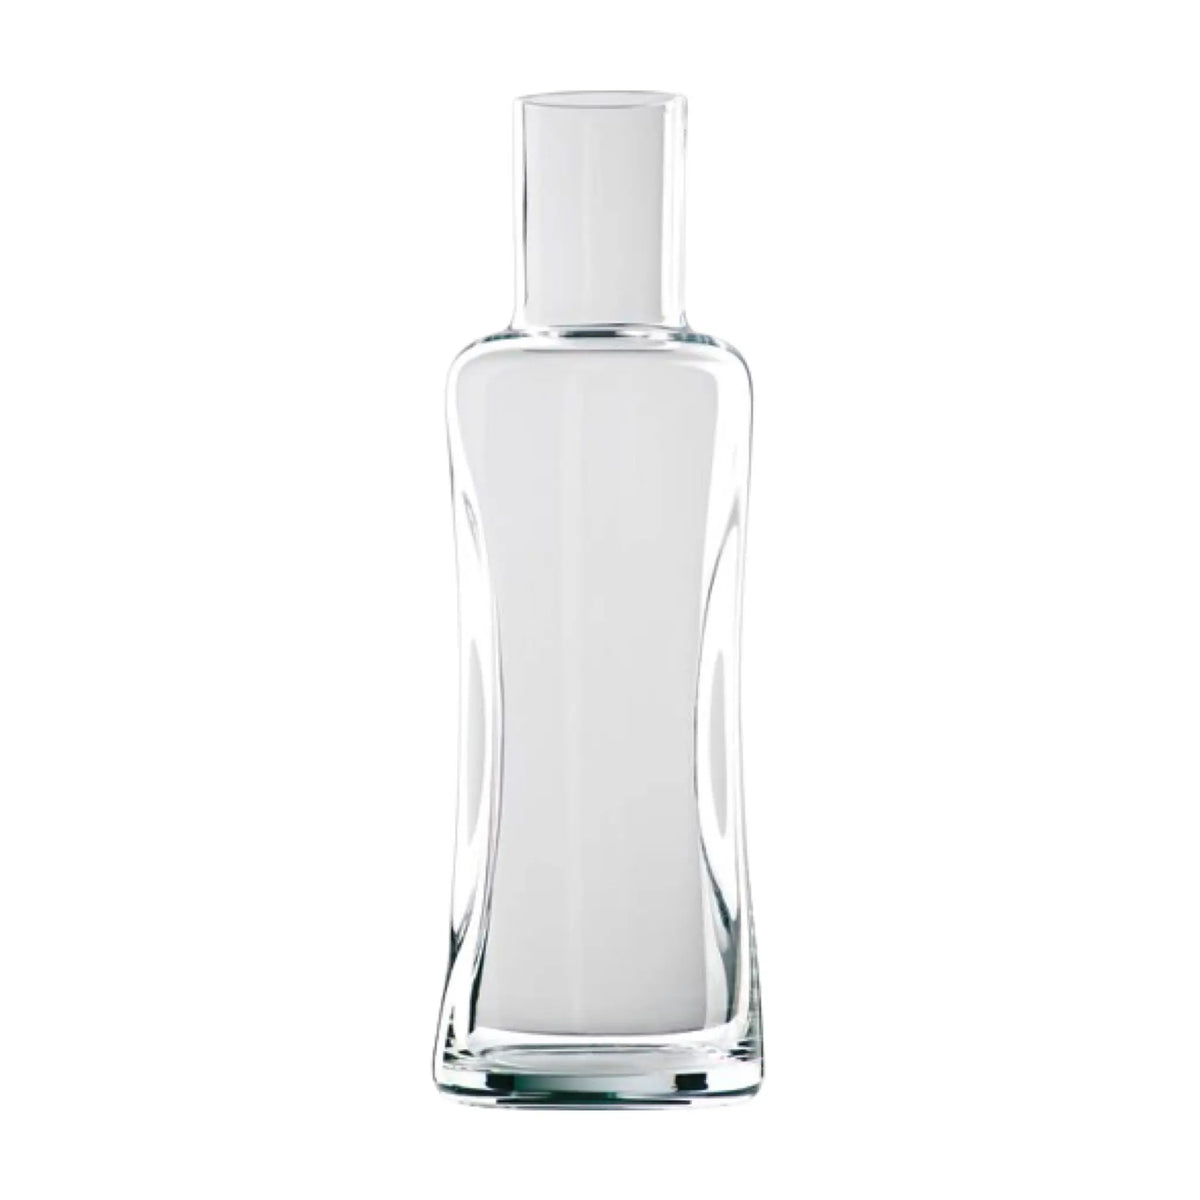 Ilios--Gläser & Accessoires-ILIOS Quetsch-Flasche mundgeblasen 1.0 Liter (6 Stk.)-WINECOM